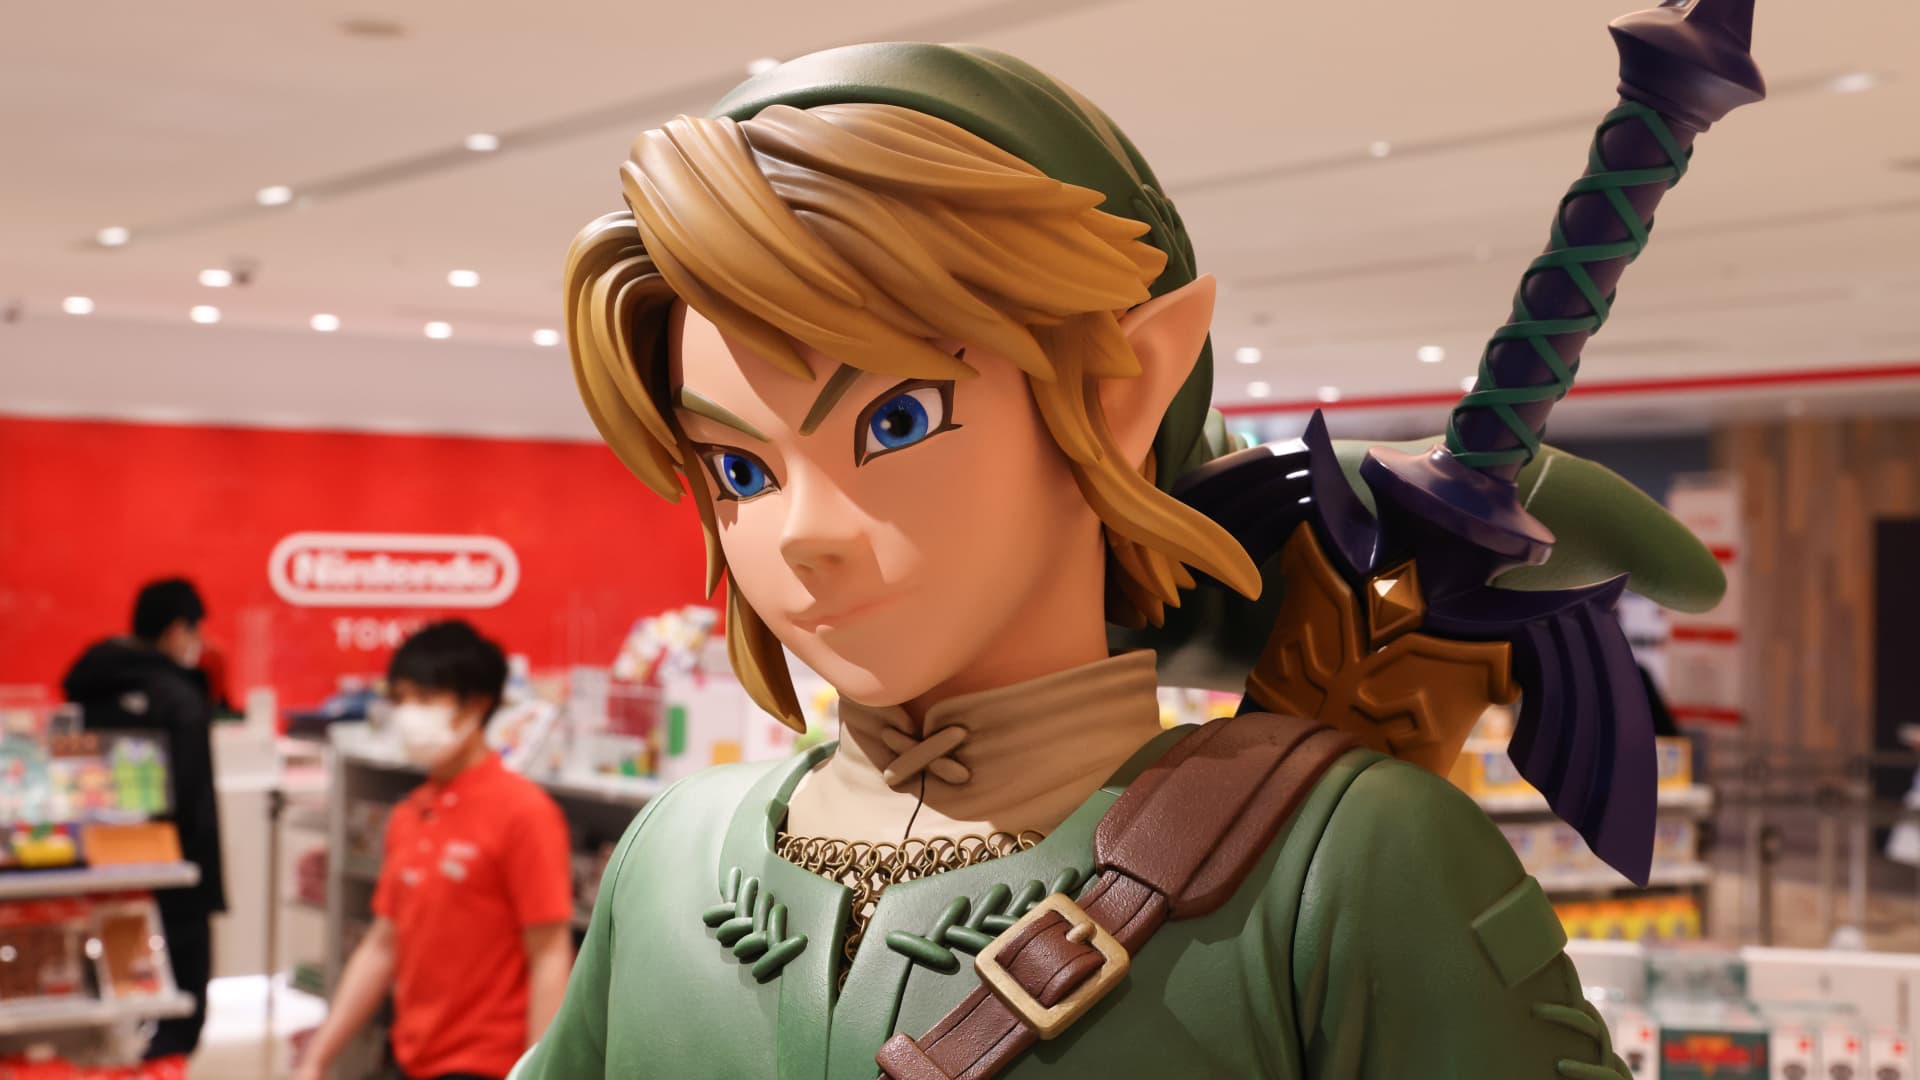 Nintendo to make Zelda movie after Mario success; shares pop 6%